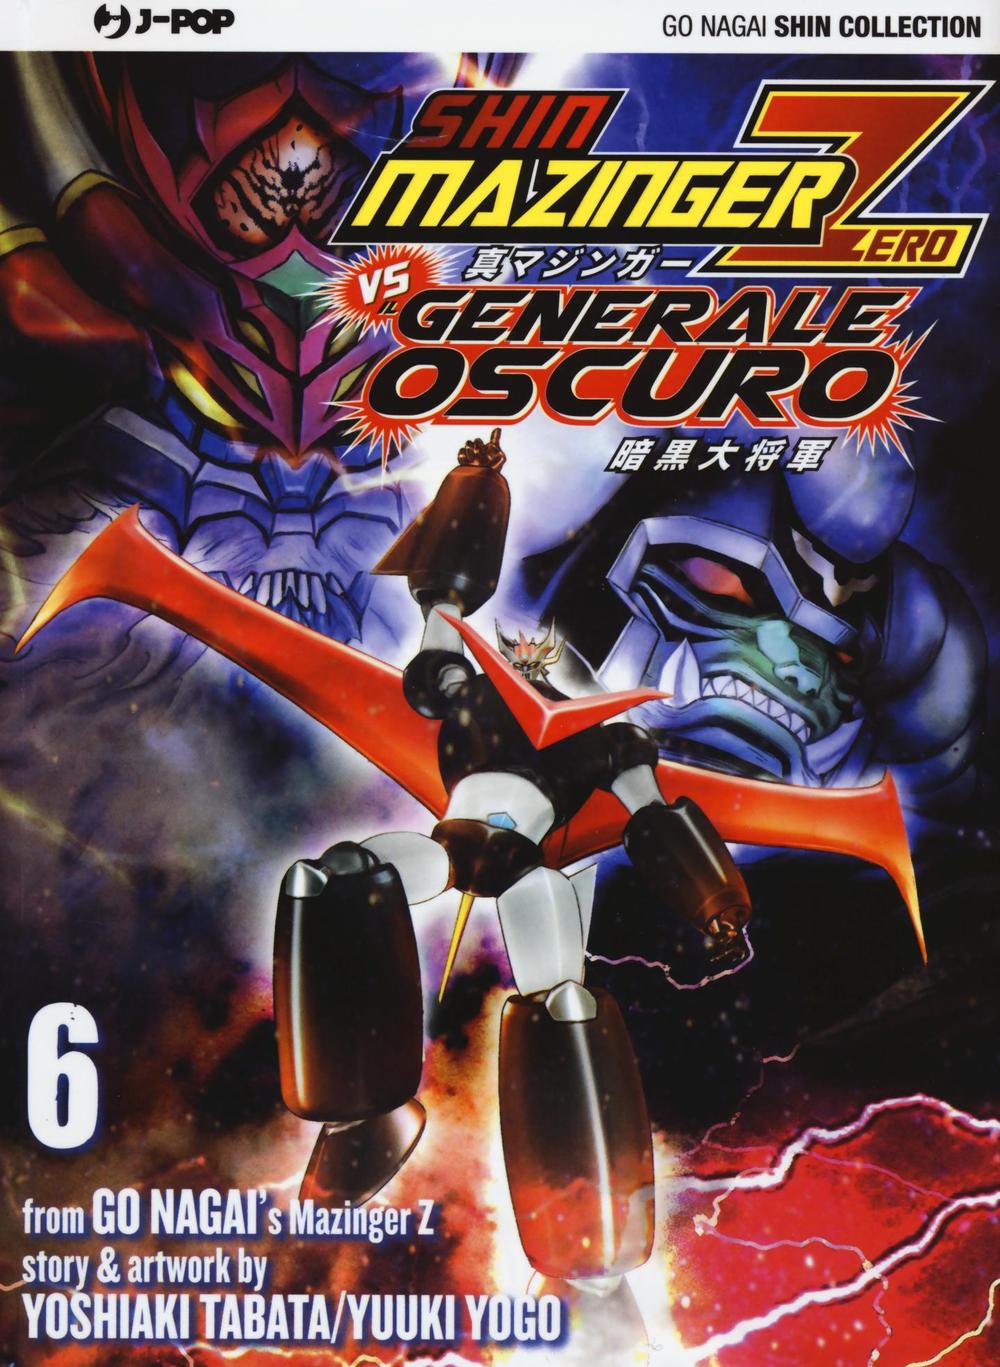 Shin Mazinger Zero vs il Generale Oscuro. Vol. 6